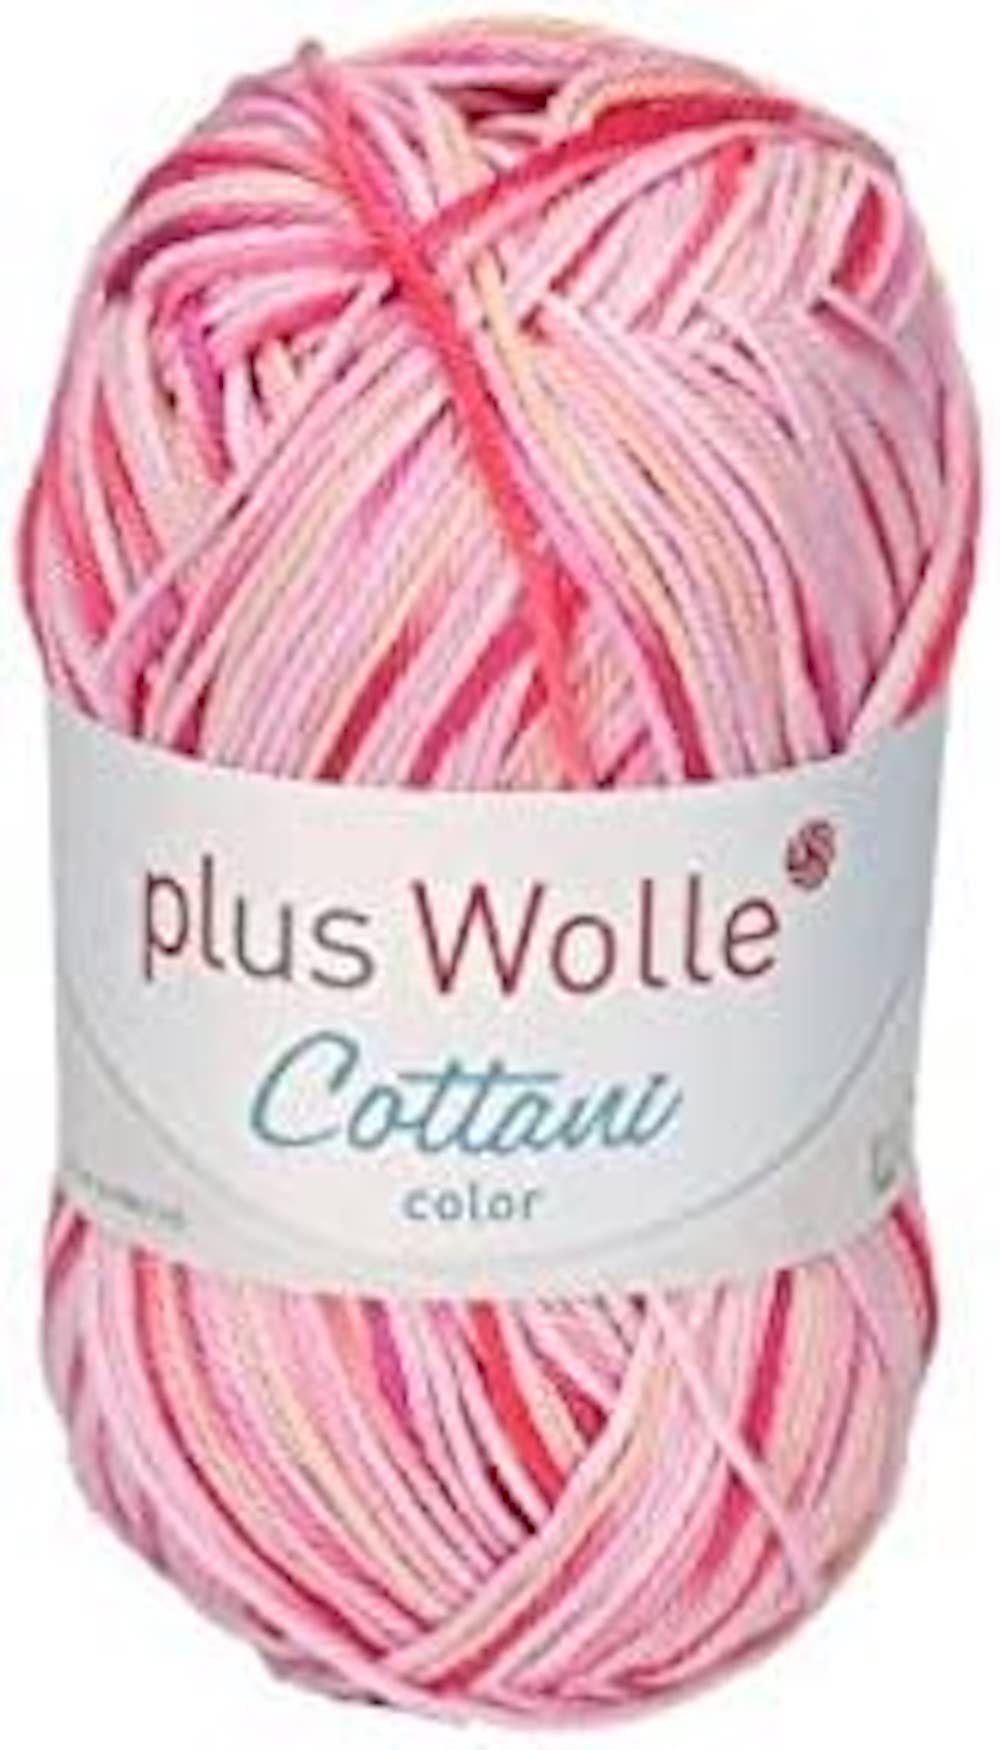 H-Erzmade Dekofigur Plus Wolle Cottani Color, 50g/125m, 100% Baumwolle Pink